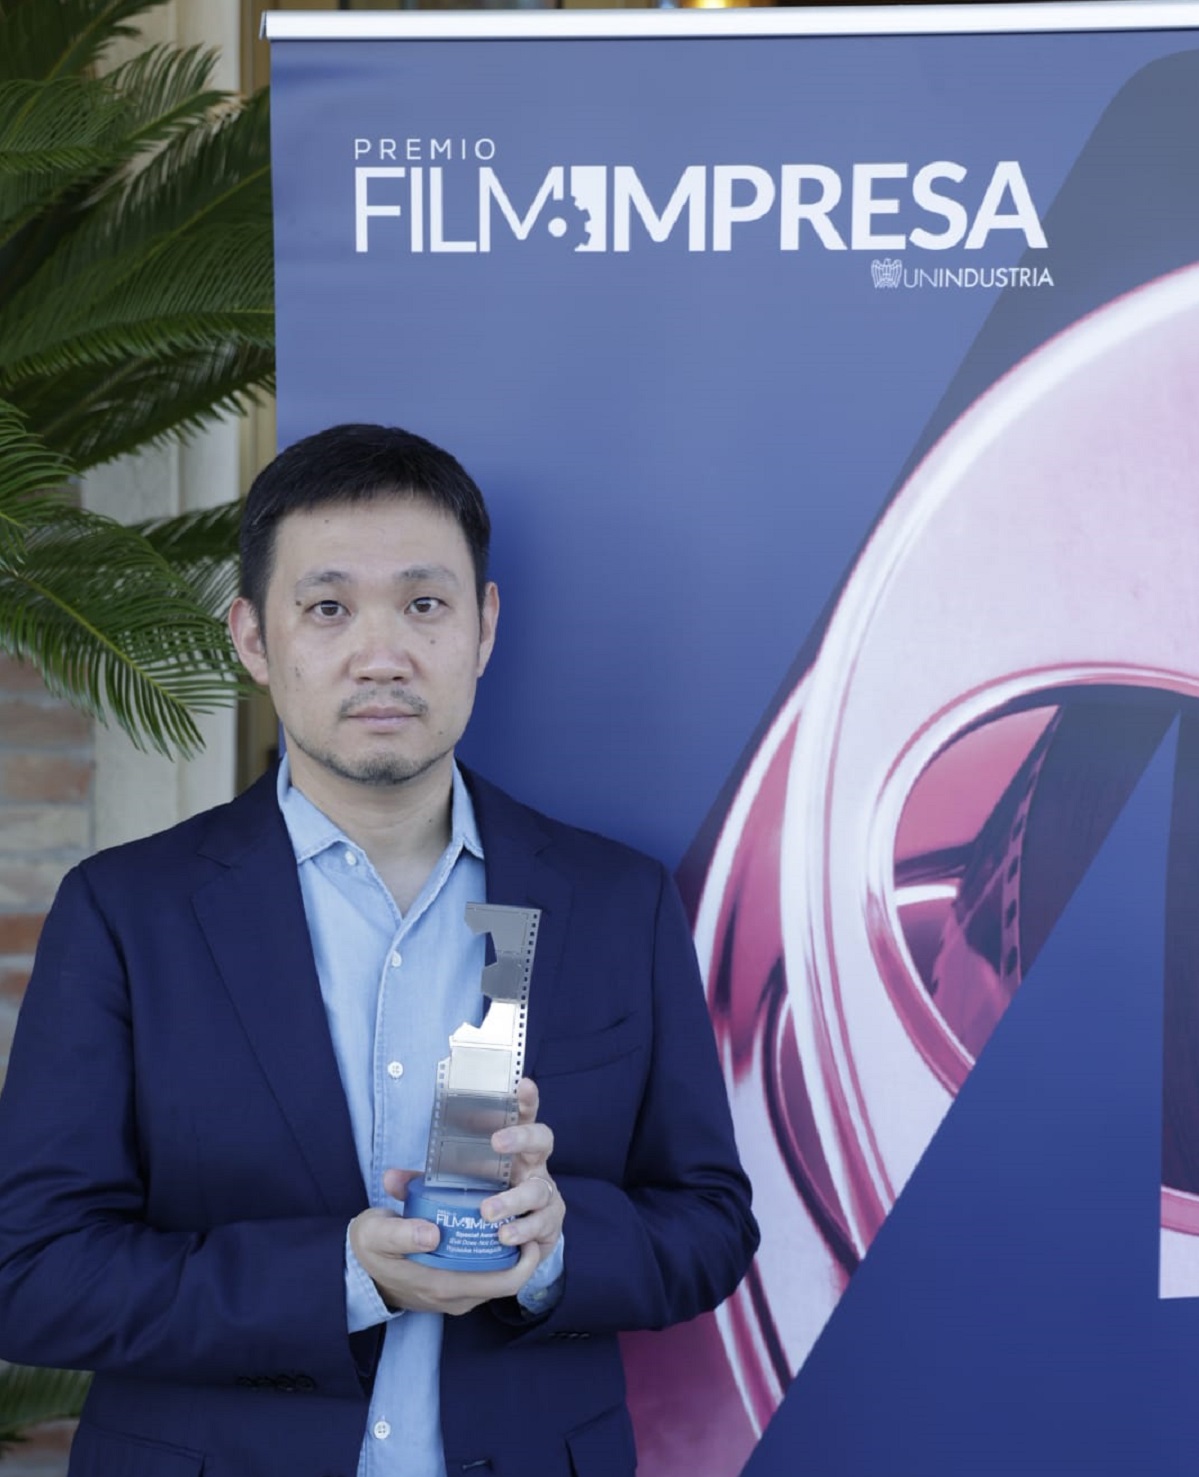 Ryusuke Hamaguchi, regista de Il male non esiste, riceve il Super Award Premio Film Impresa